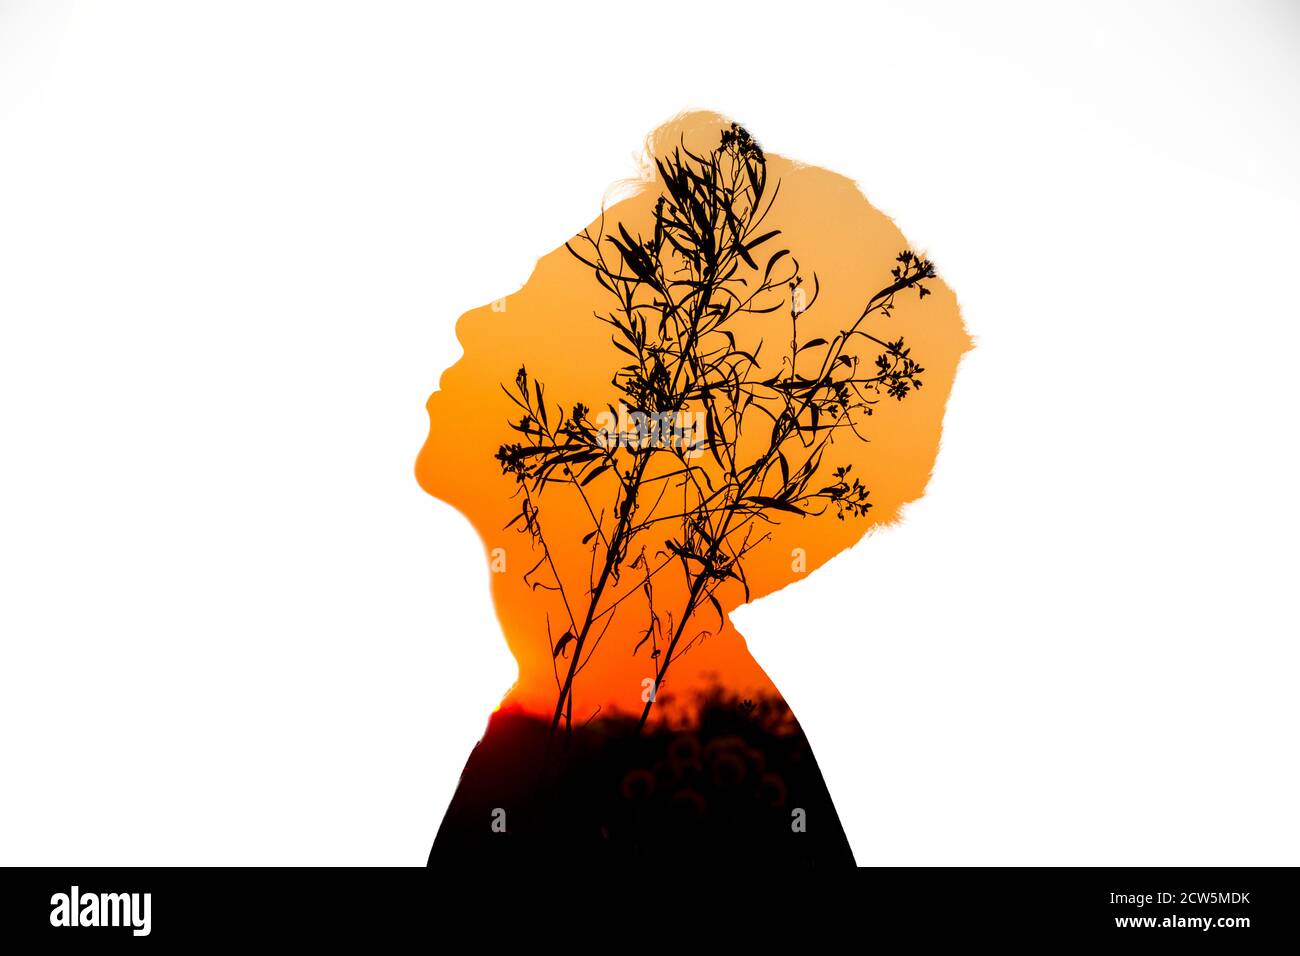 Composito digitale a esposizione multipla con una silhouette di una persona in profilo e un tramonto con una silhouette di un albero. Foto Stock